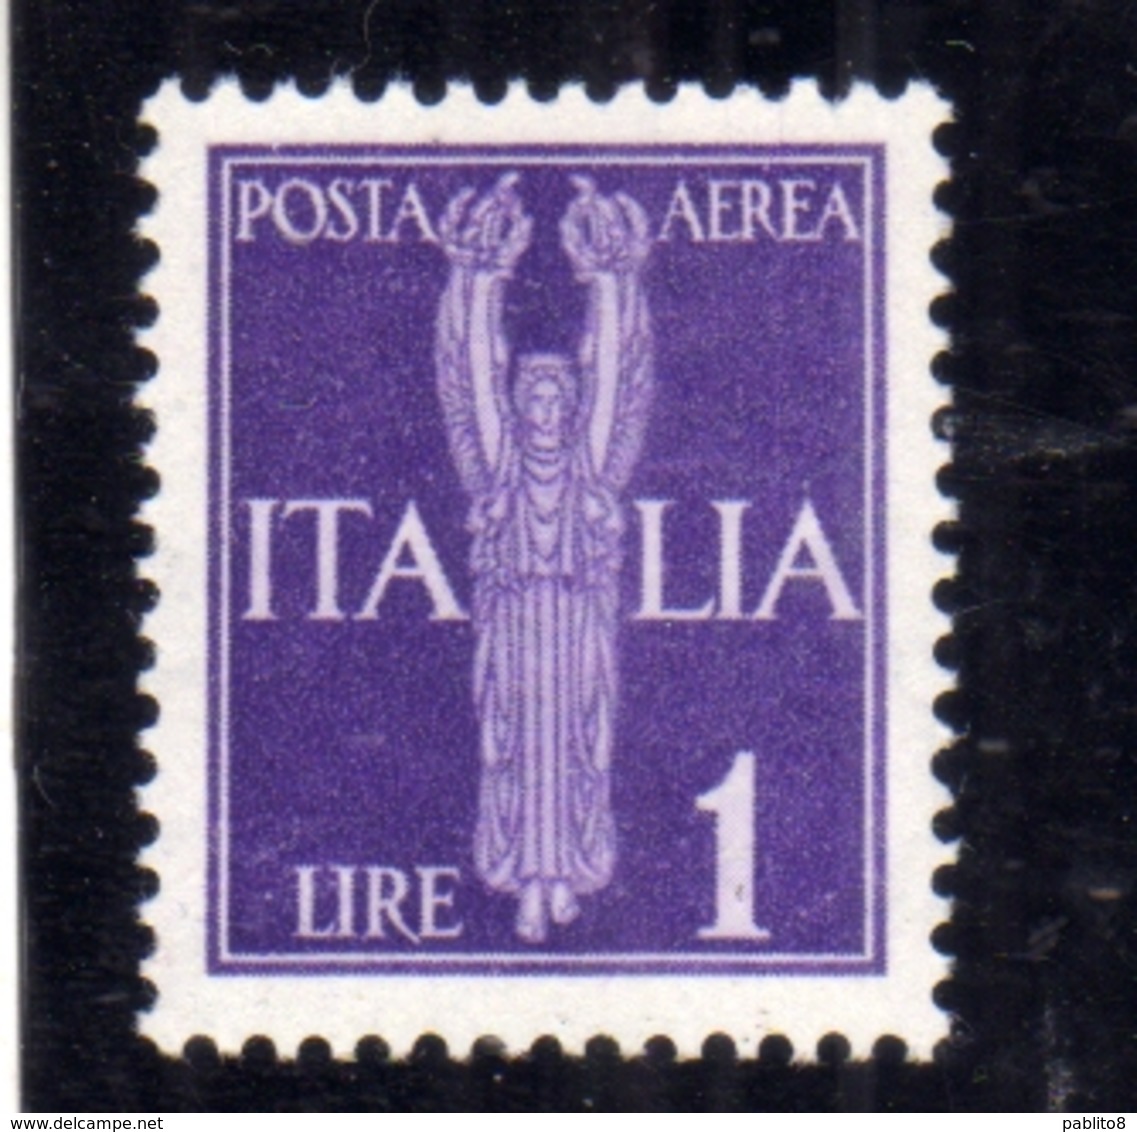 ITALIA REGNO ITALY KINGDOM 1944 REPUBBLICA SOCIALE ITALIANA RSI GNR POSTA AEREA AIR MAIL LIRE 1 MNH OTTIMA CENTRATURA - Luftpost